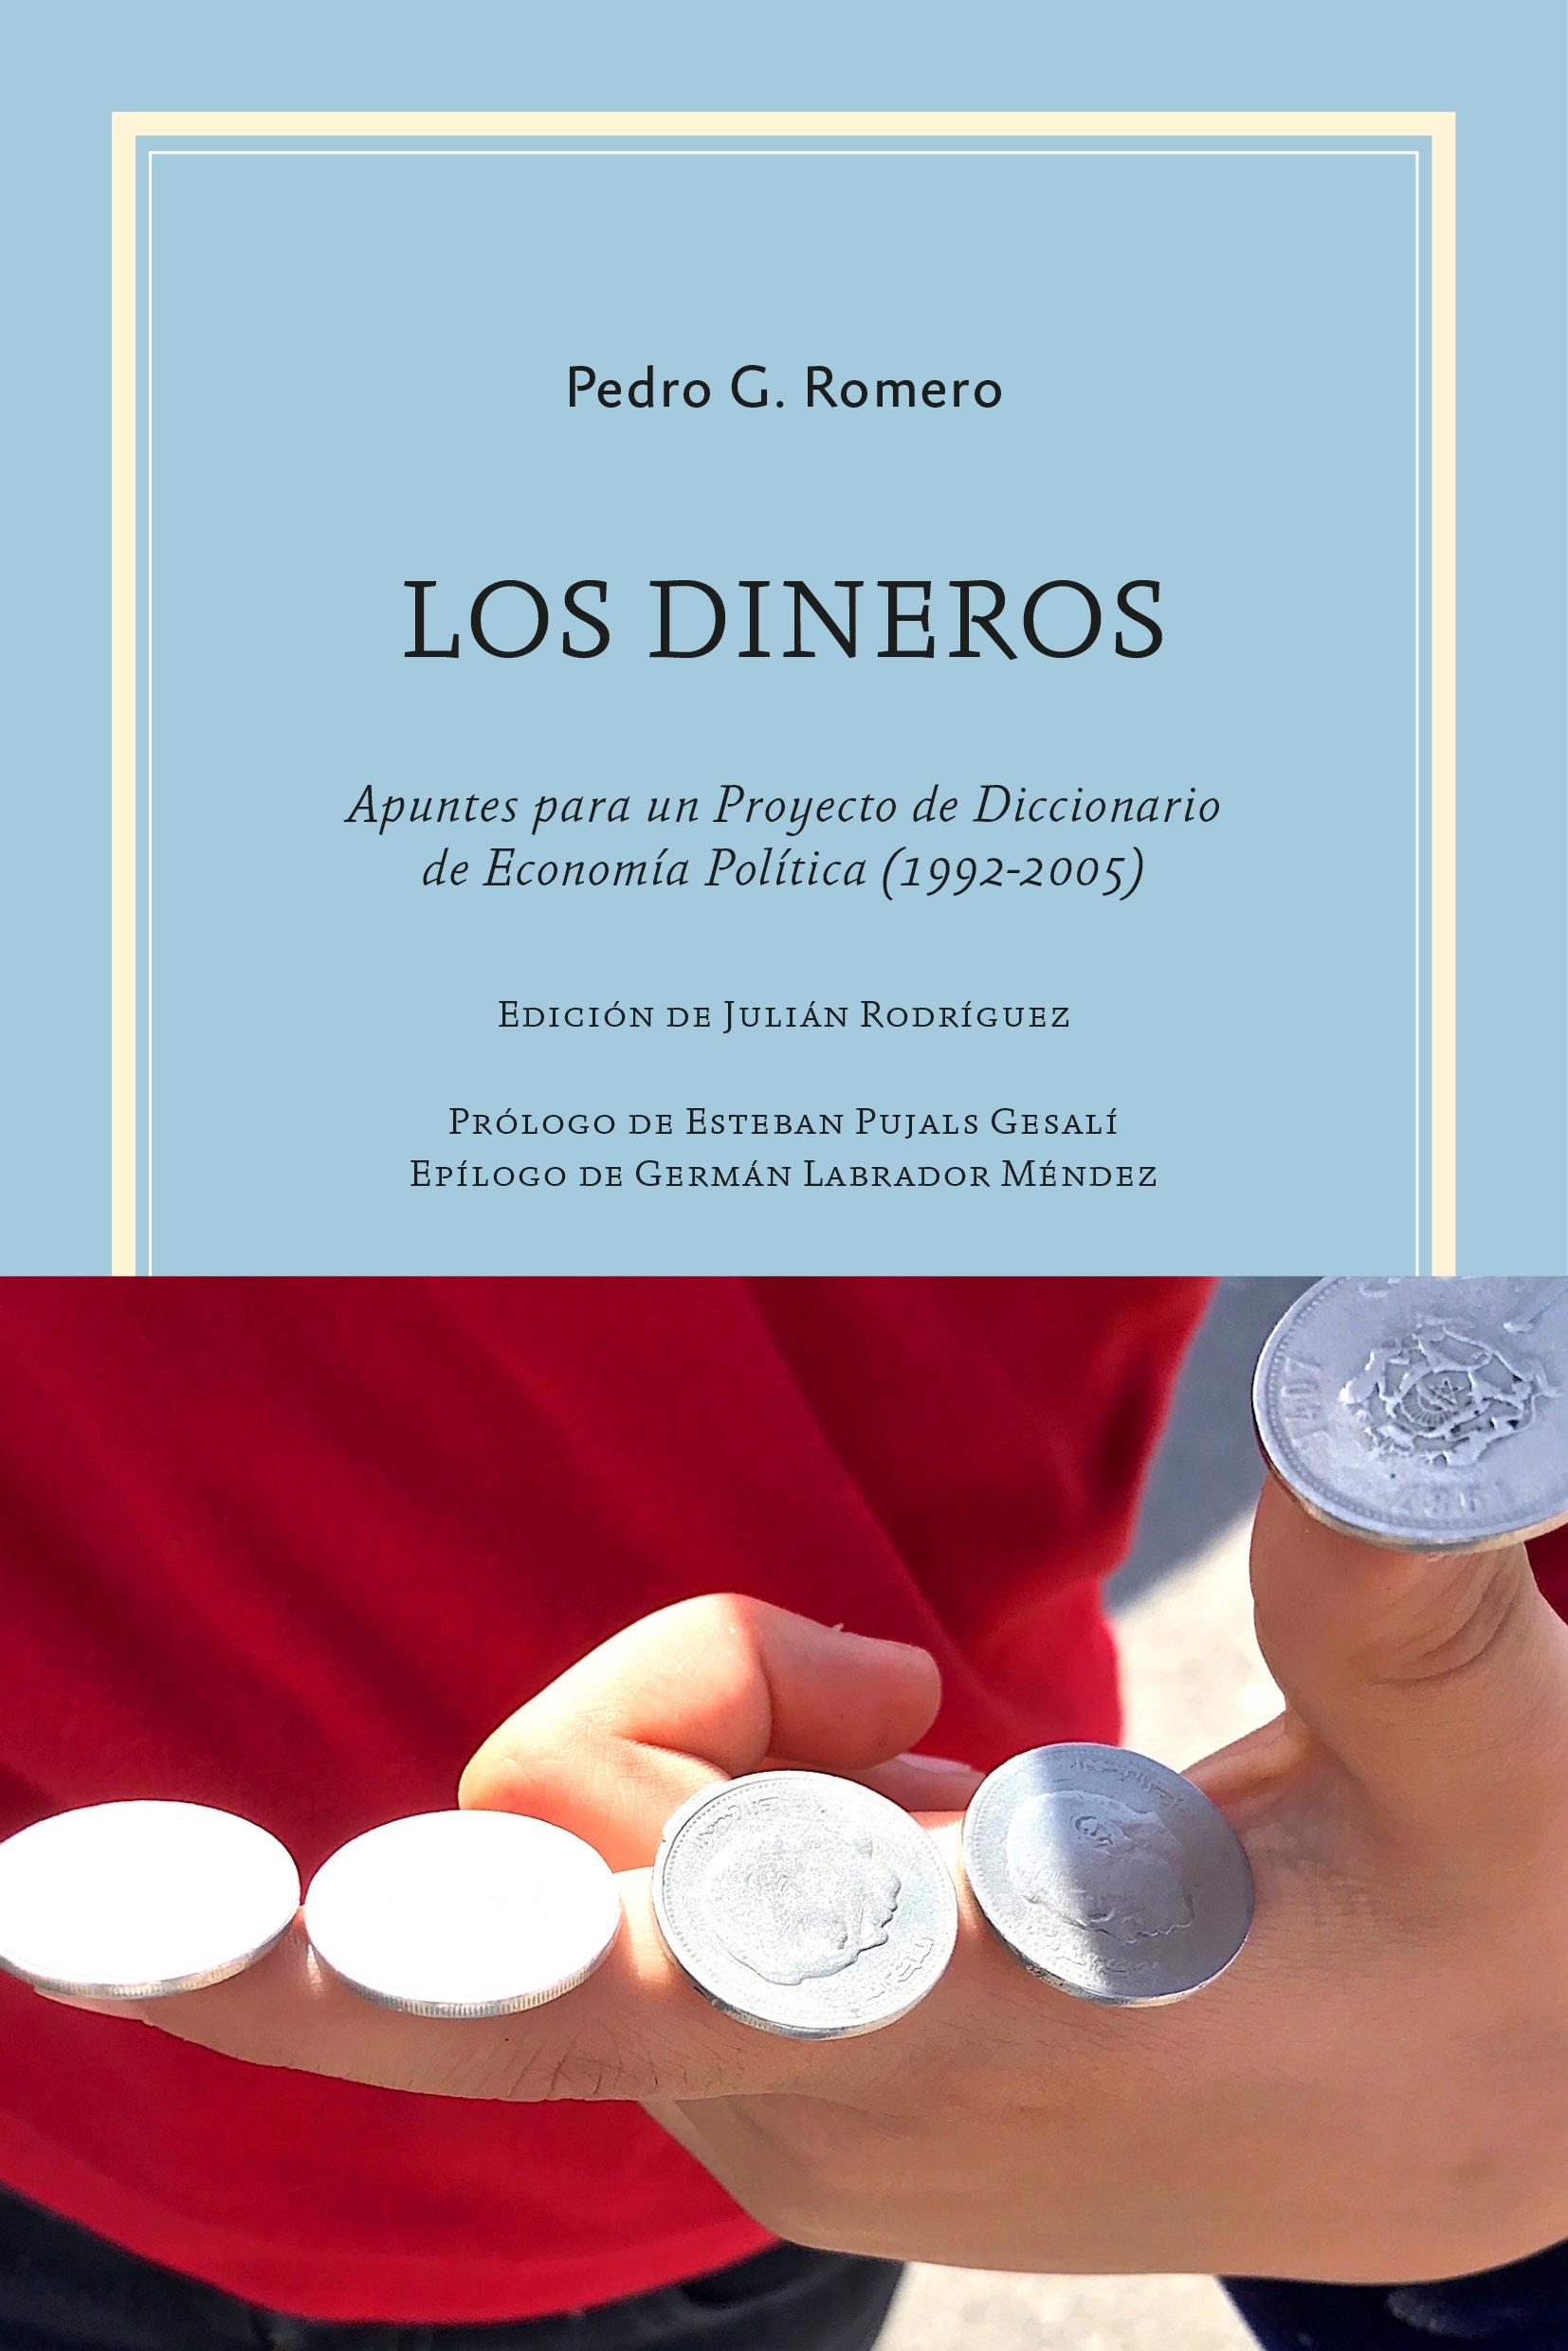 Los Dineros "Apuntes para un Proyecto de Diccionario de Economía Política (1992-2005)". 